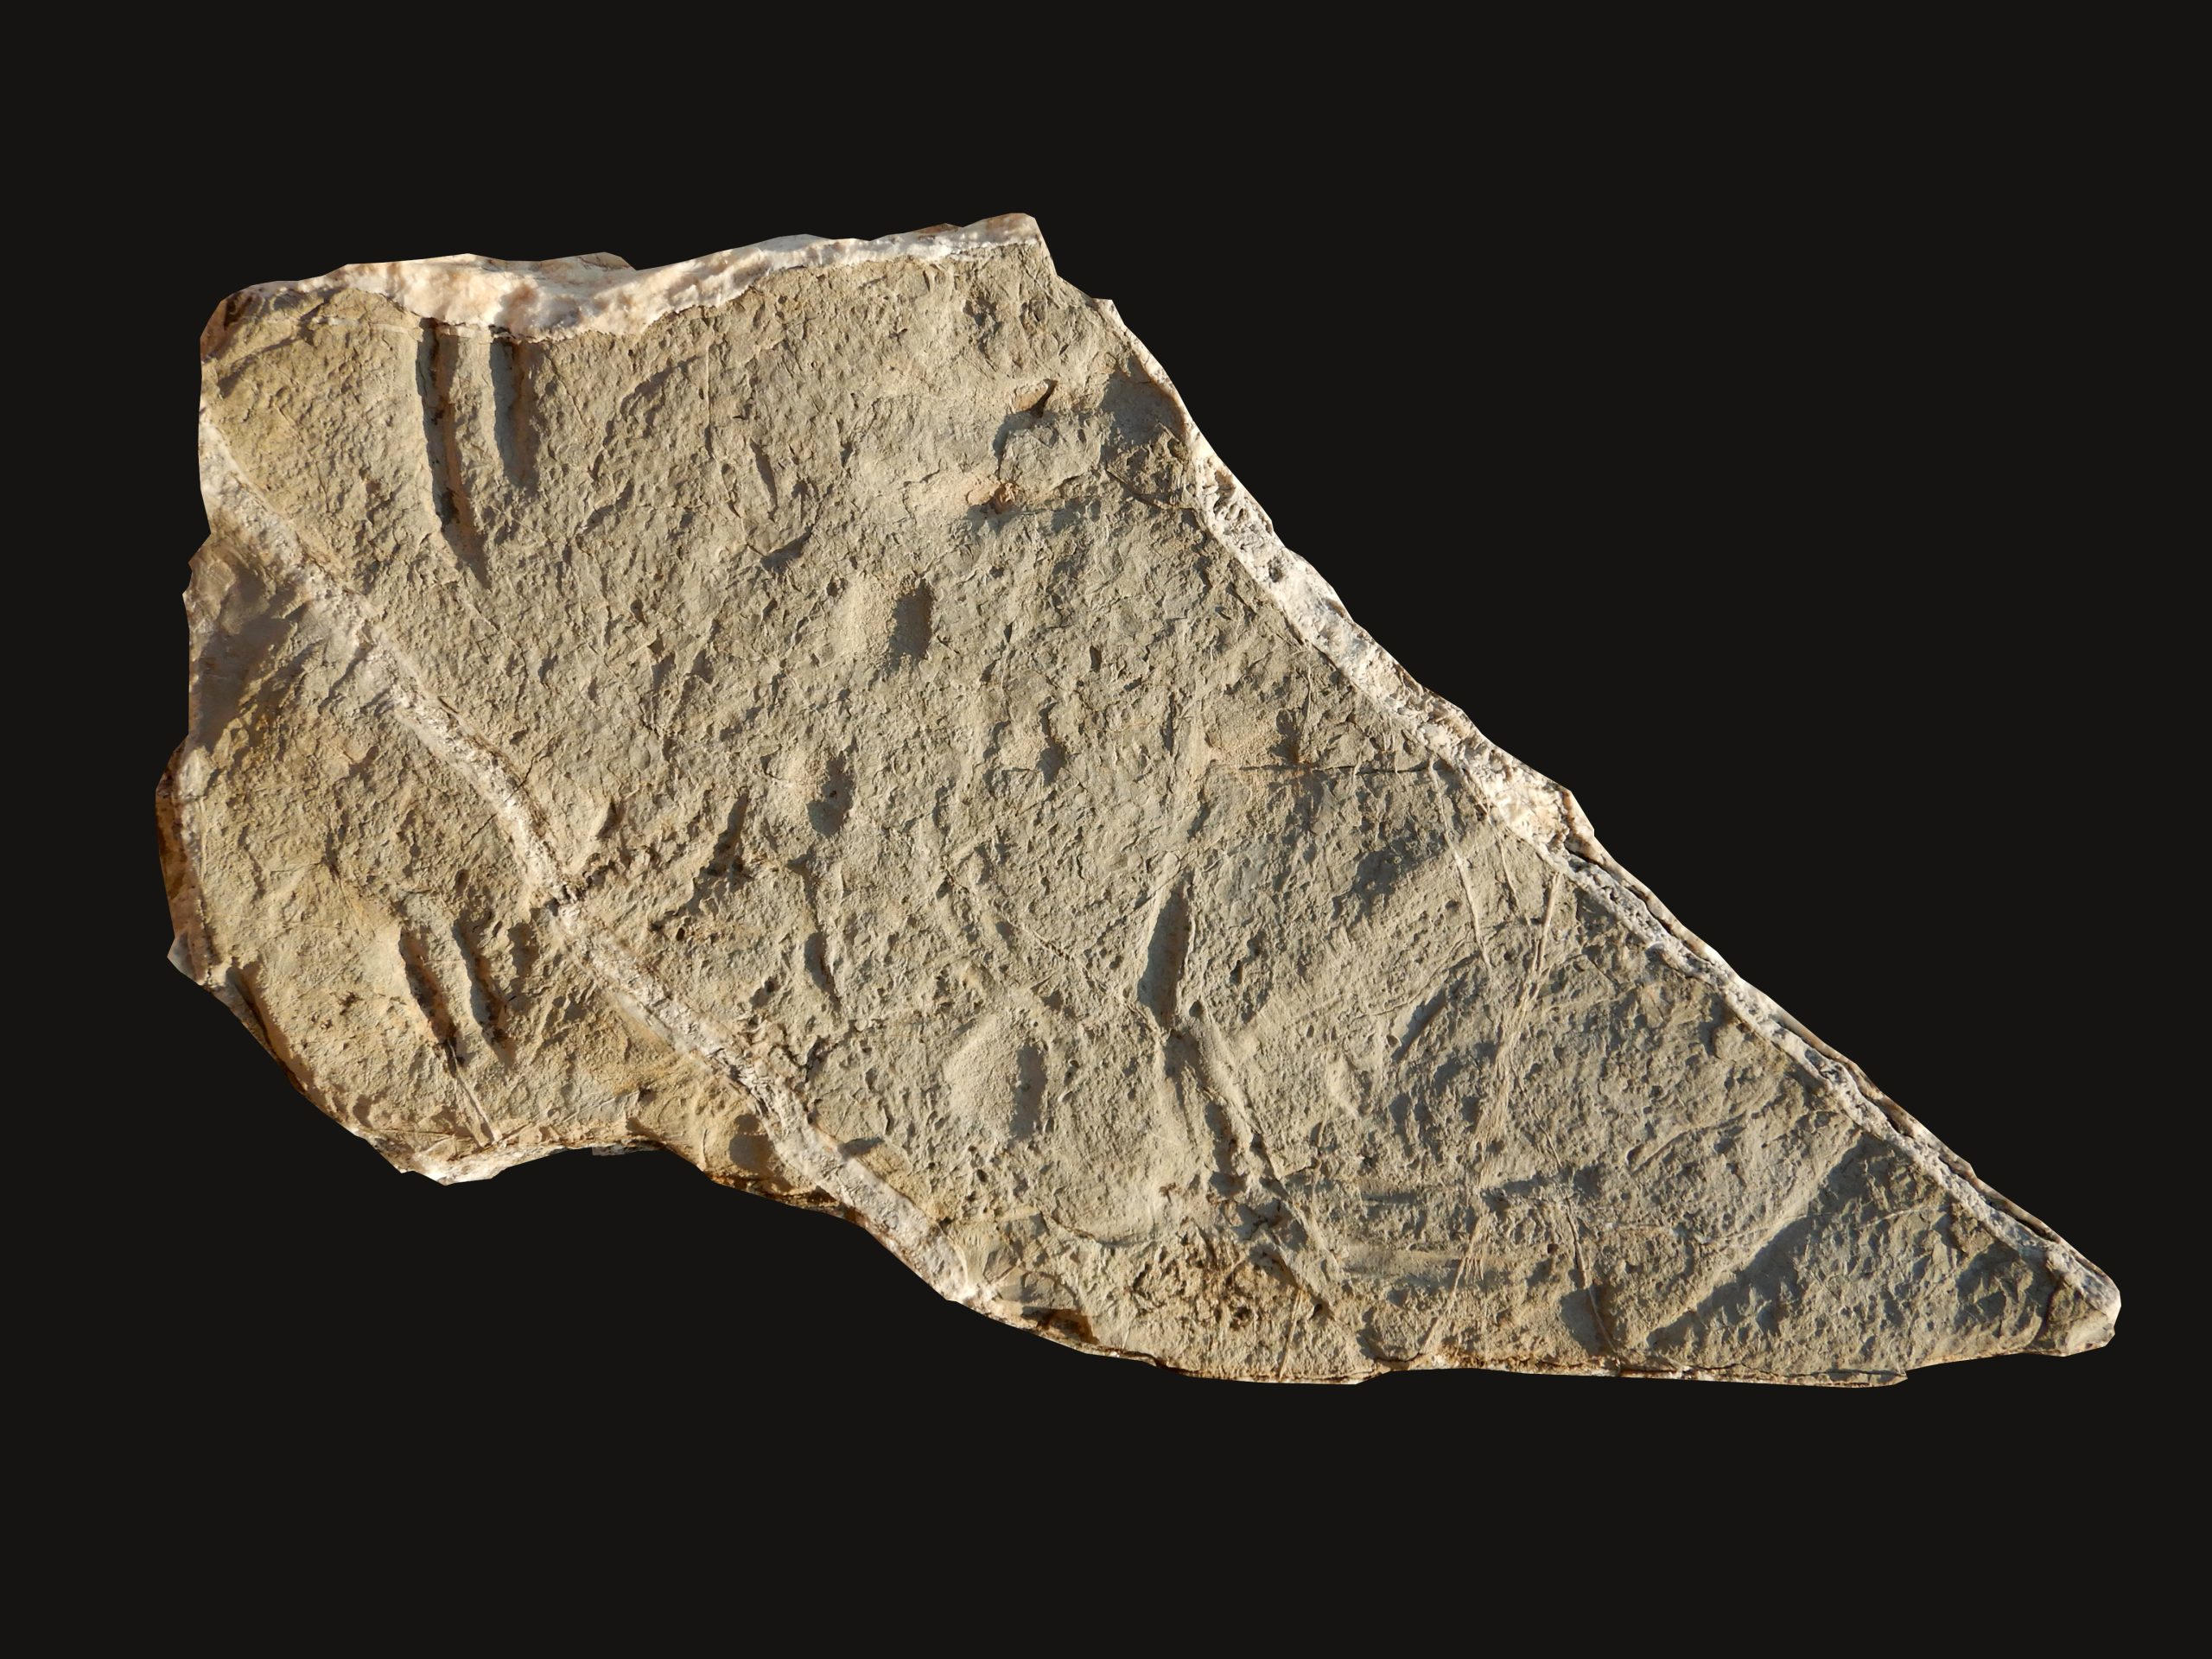 「自分が見ているものが信じられませんでした」 – 1億3,000万年前の岩石の中で、進化のパズルの欠けていたピースを発見